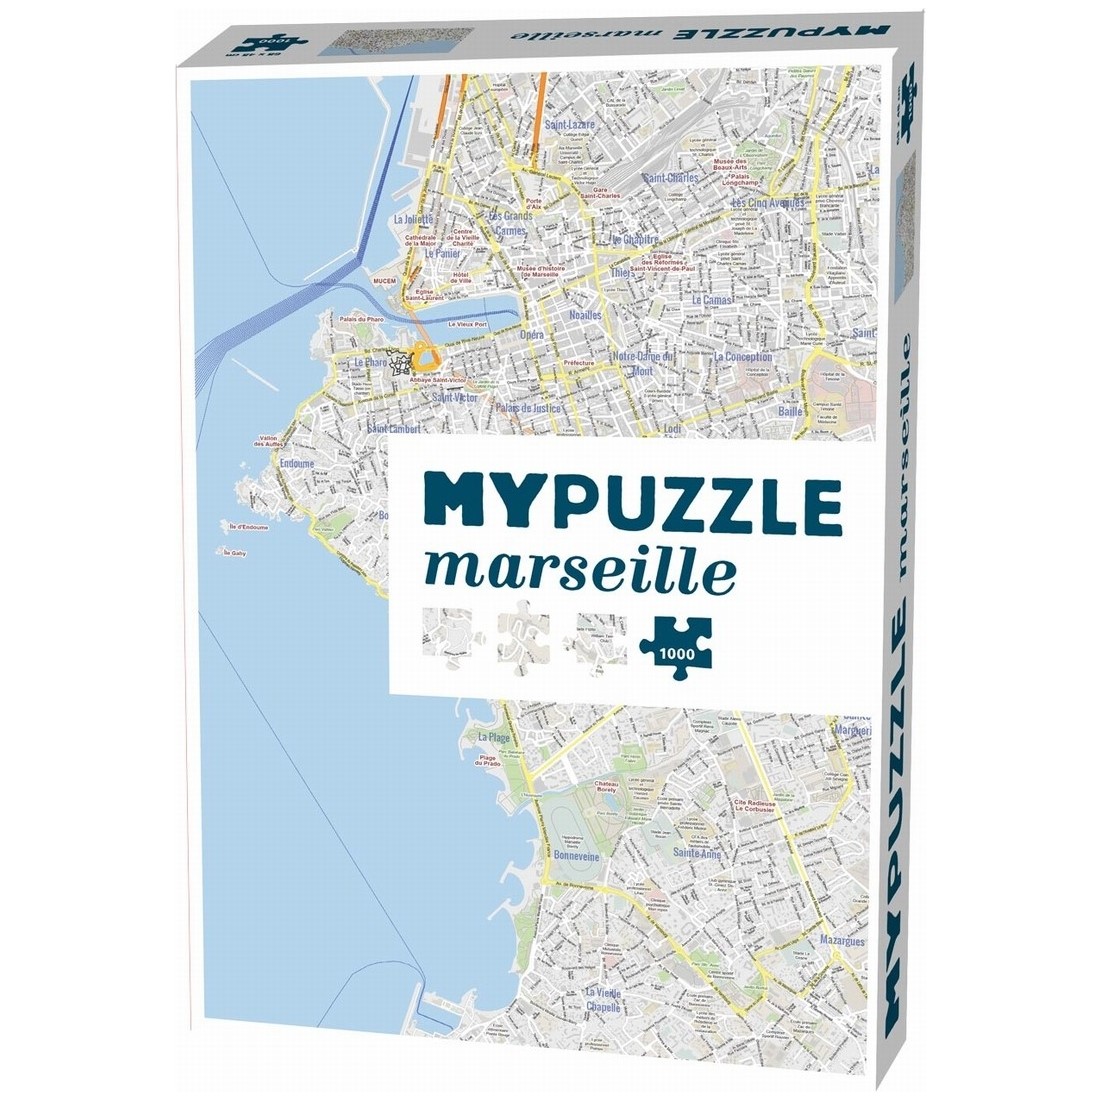 https://lesamisludiques.com/5685-thickbox_default/helvetiq-puzzle-1000-pieces-mypuzzle-marseille-7640139531919.jpg